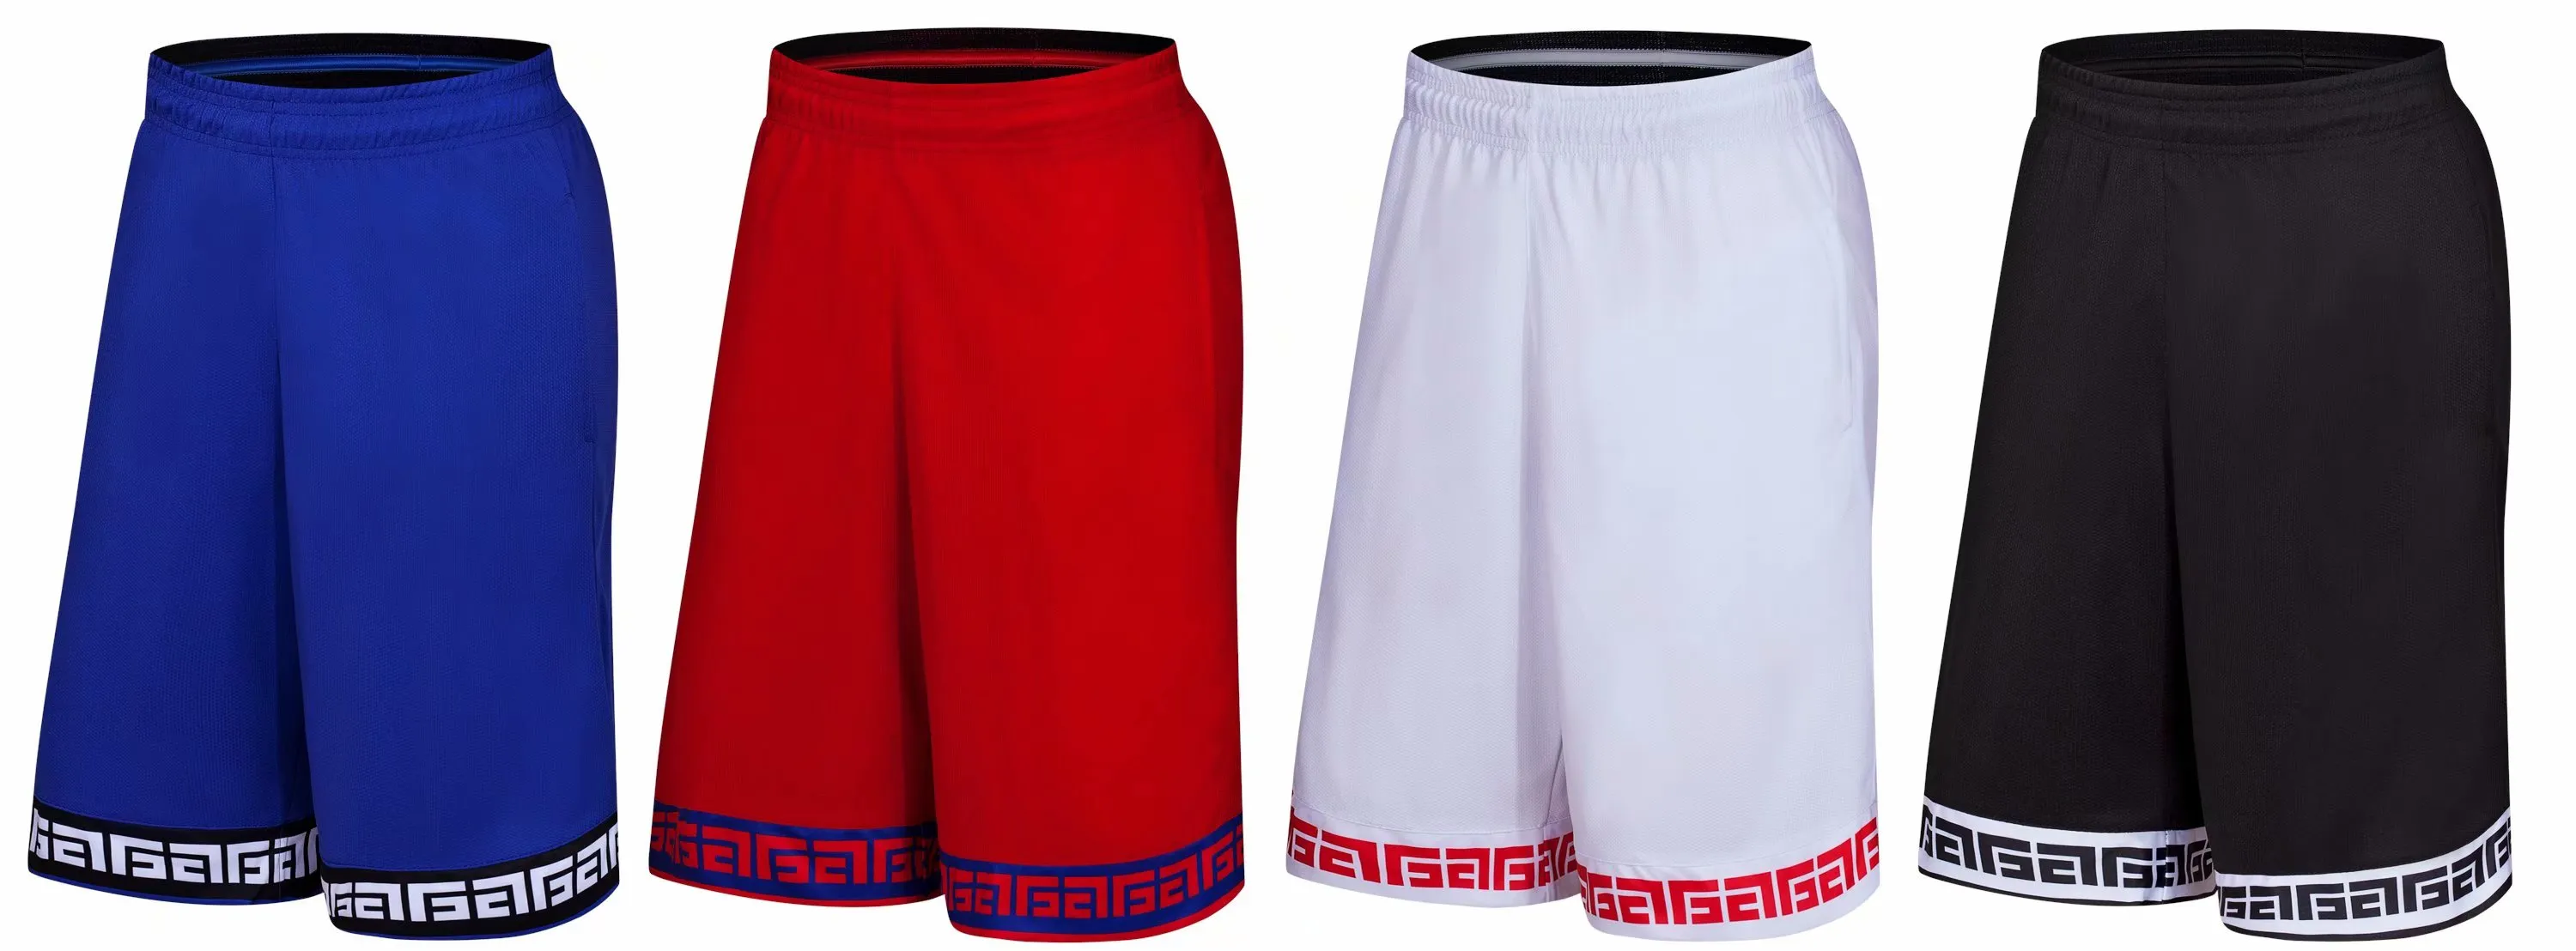 8813 Hommes actifs athlétiques shorts d'extérieur avec poches pour loisir fitness formation basketball marche 4 couleurs